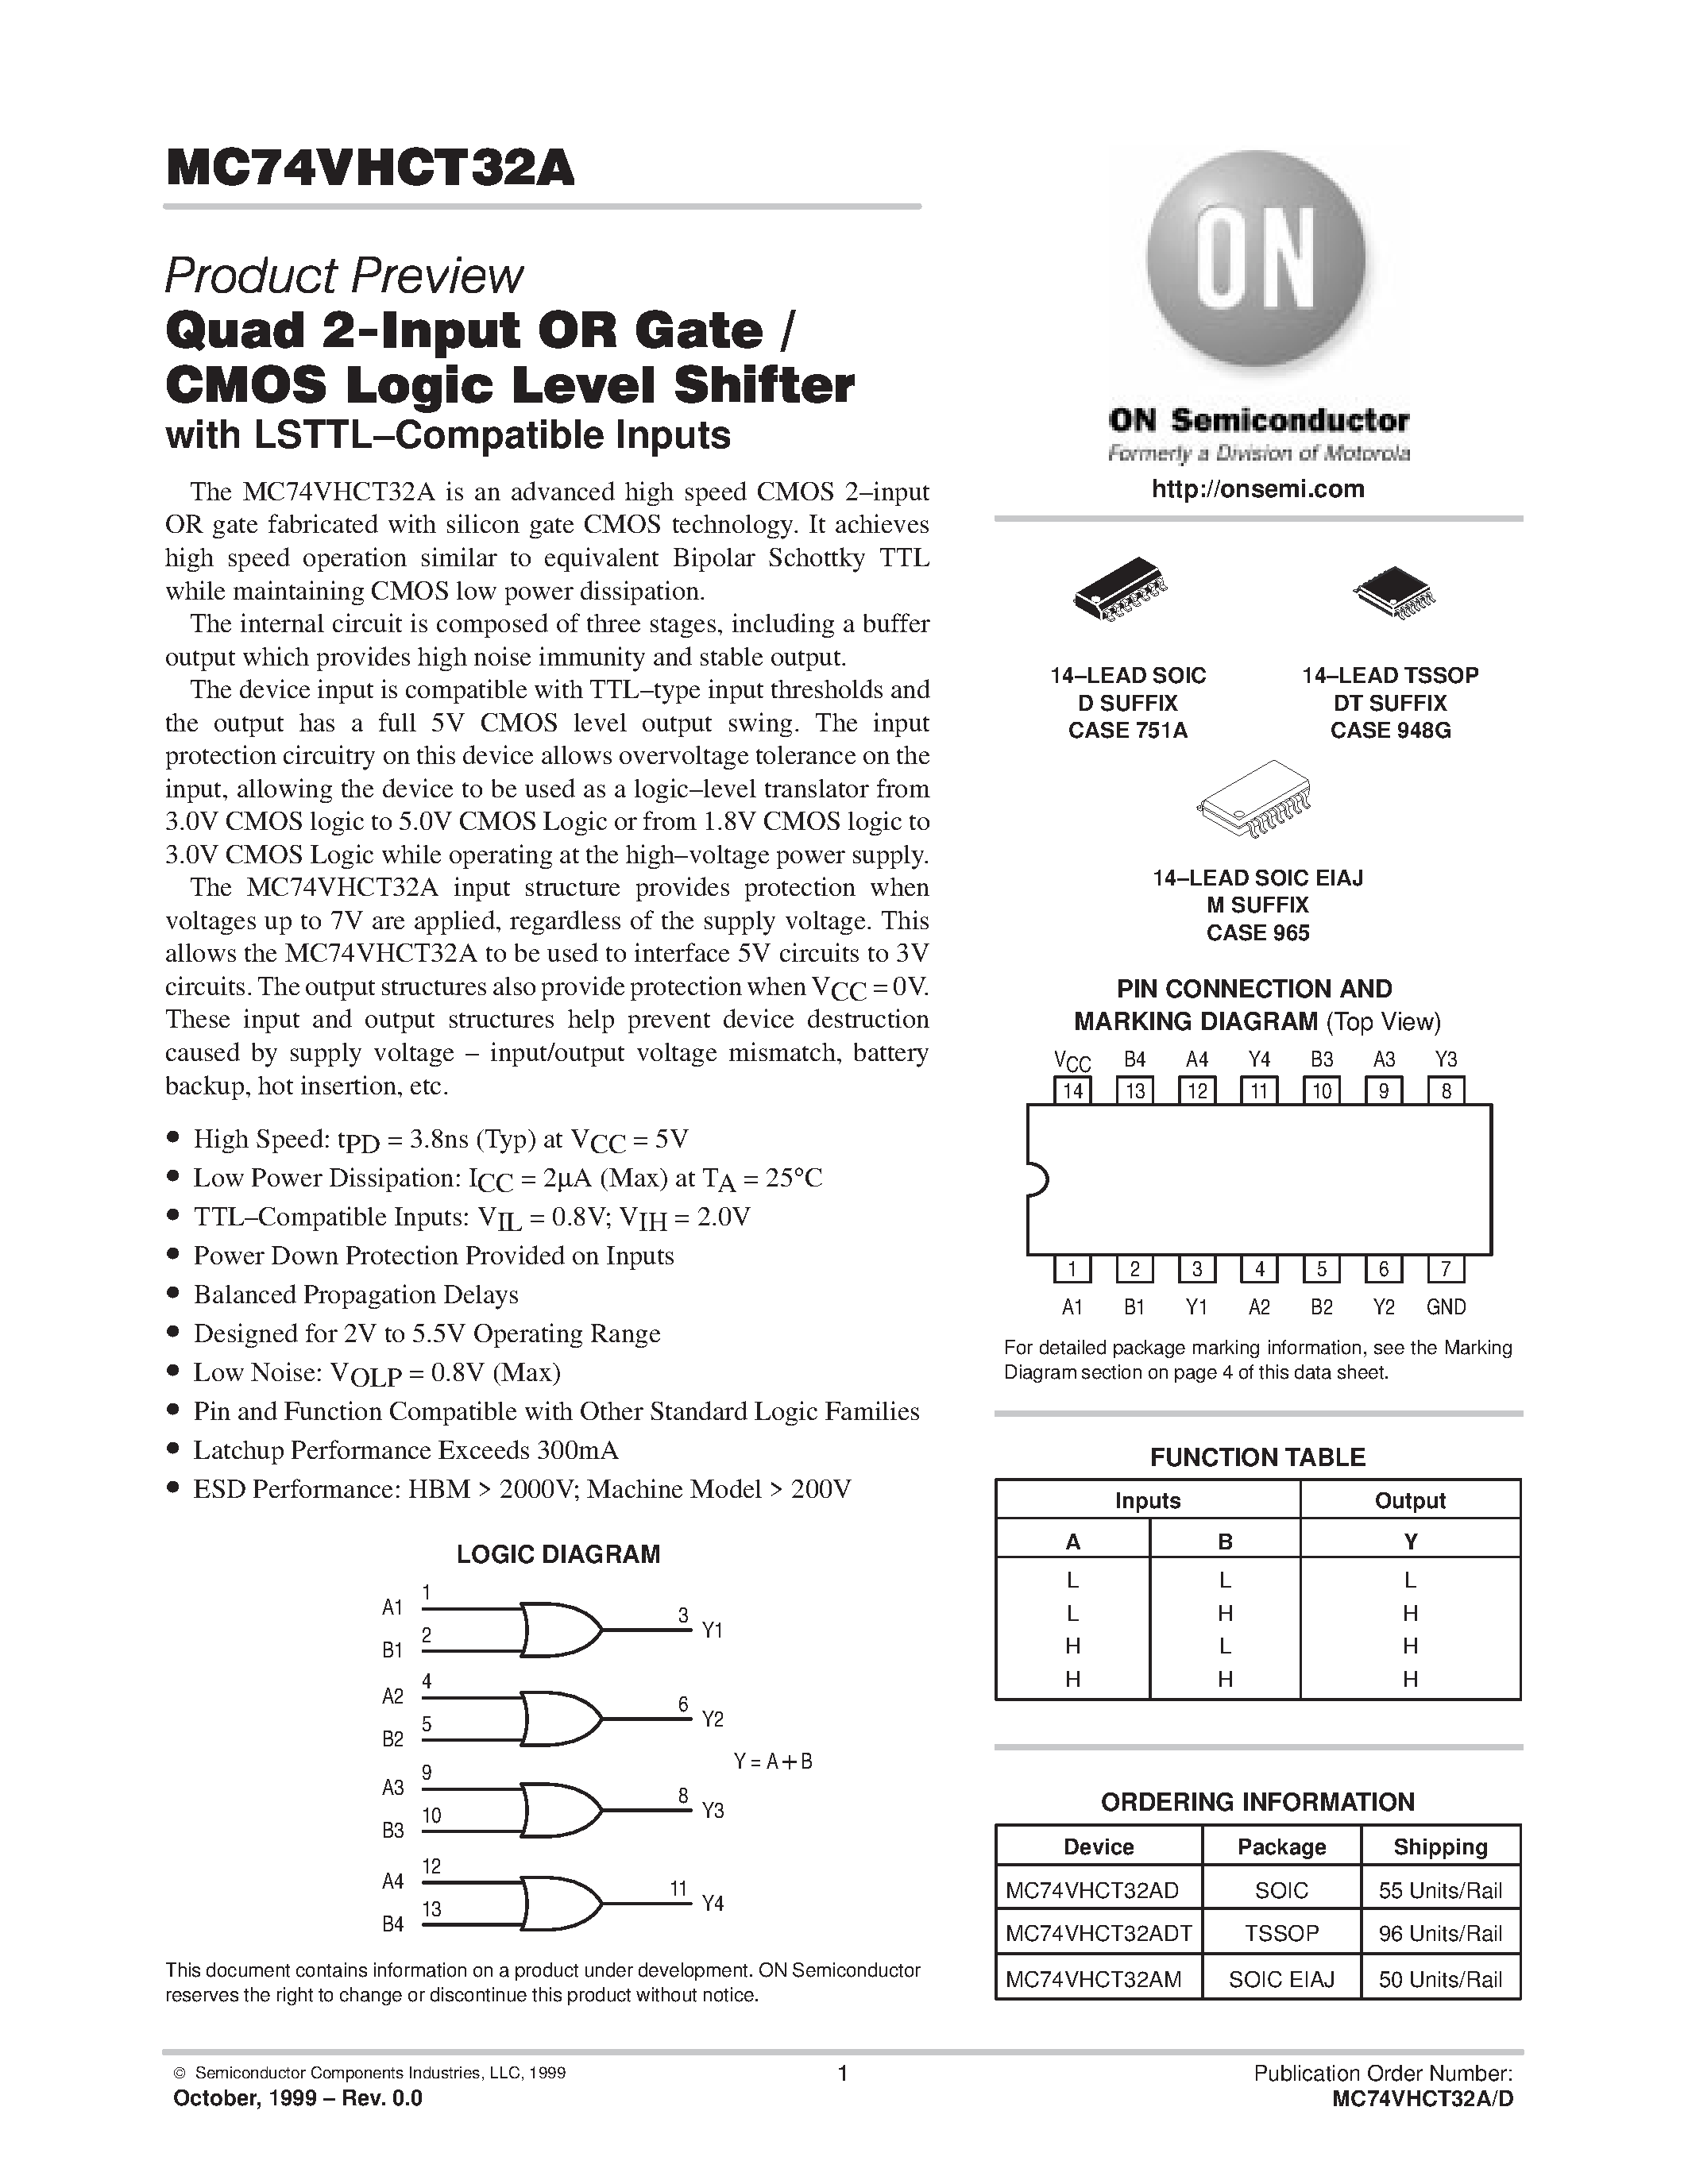 Даташит MC74VHCT32A - QUAD 2 INPUT OR GATE CMOS LOGIC LEVEL SHIFTER страница 1